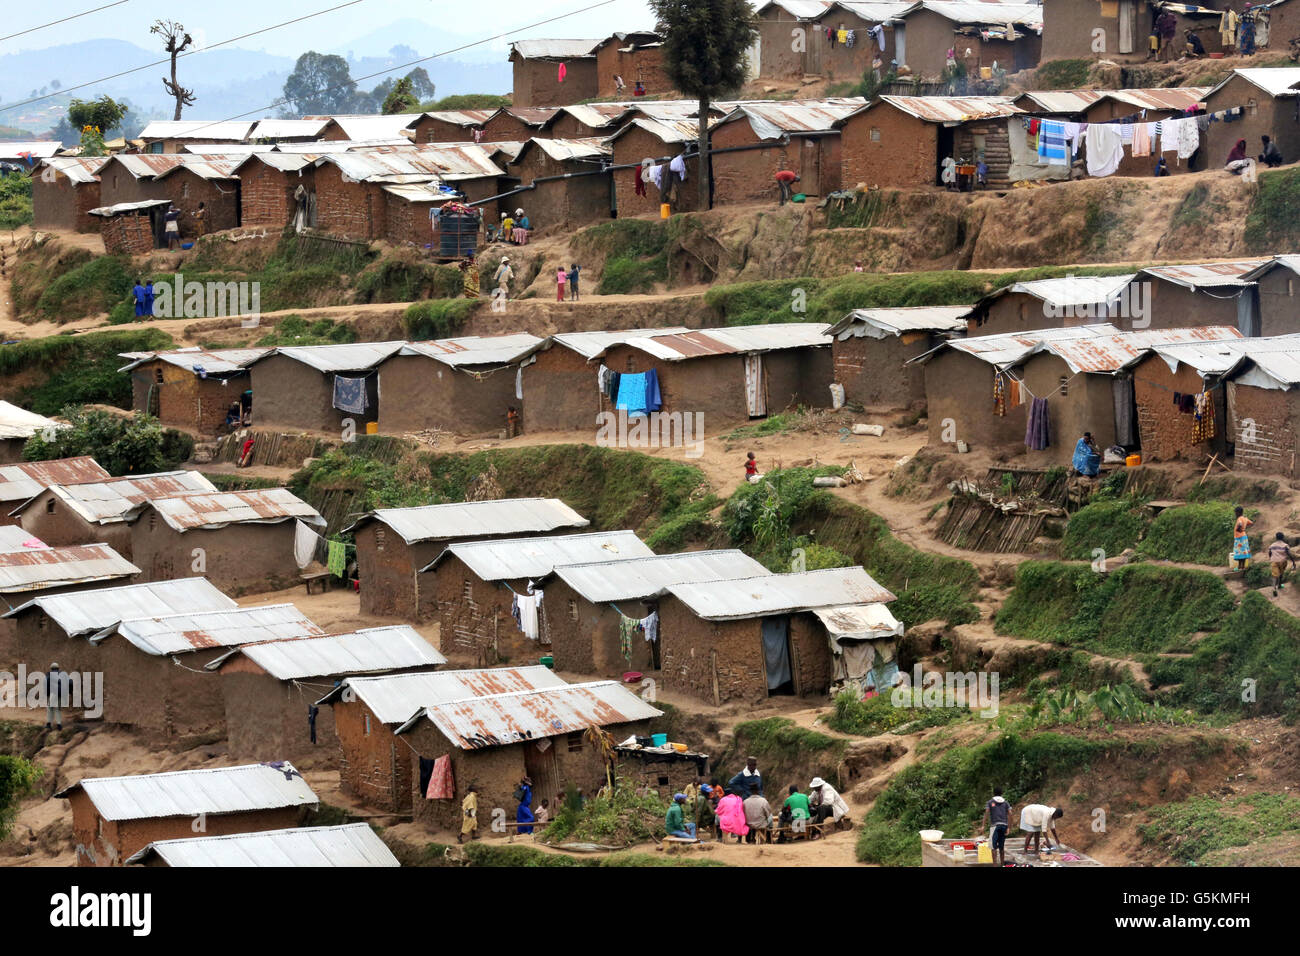 Capanne di argilla in un campo di rifugiati Kigeme nei pressi di Gikongoro, in Rwanda, Africa - Il camp è situato nel distretto di Nyamagabe del sud della provincia, circa 150 Km da Kigali e 120 km dal confine di Bukavu. Il camp è stato istituito nel 2012 per ospitare i rifugiati fuggiti feroci combattimenti tra soldati FARDC e M23 ribelli. Che il camp originariamente ospitava alcune 2.100 rifugiati burundesi fino a maggio 2009. Il governo del Ruanda ha riaperto e ampliato nel giugno 2012 al fine di ospitare migliaia di profughi che erano stati ricevuti temporalmente in Nkamira Transit Centre in Rubavu vicino ai confini del Ruanda Foto Stock